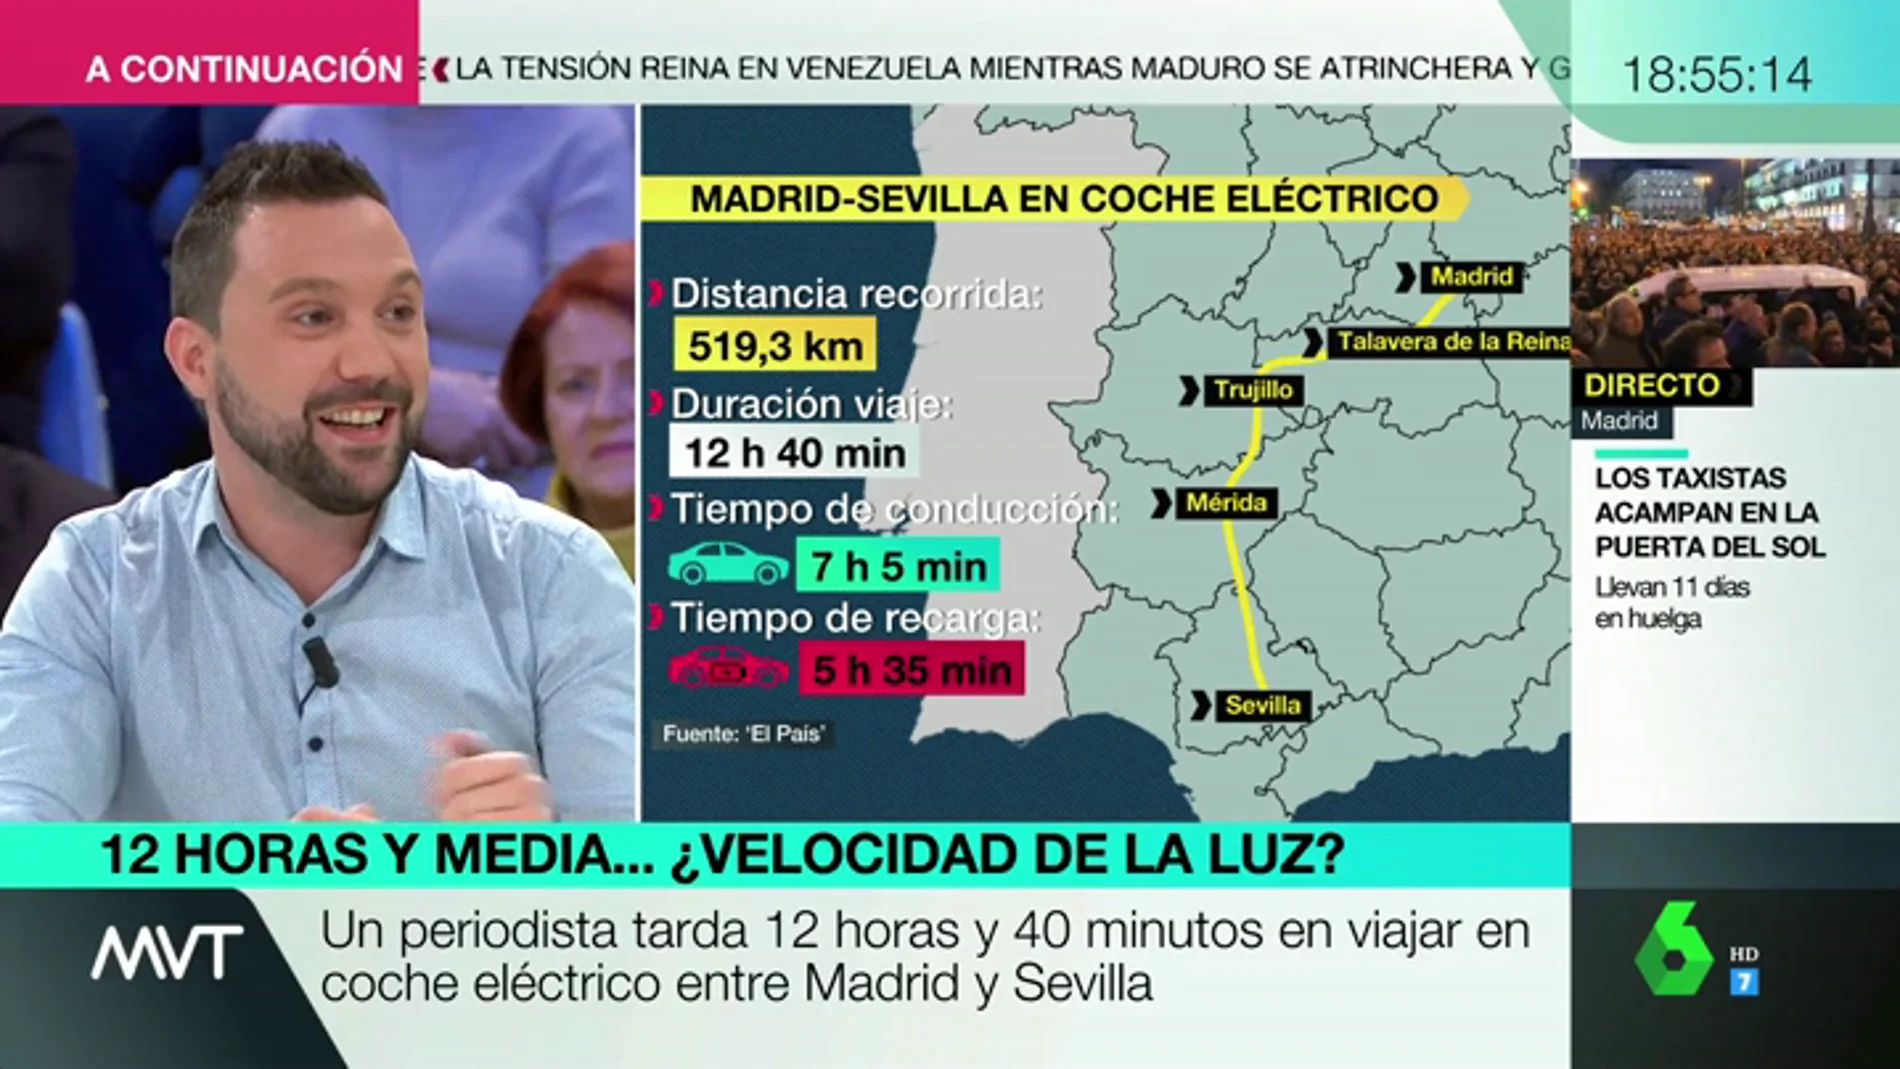 Madrid-Sevilla en 12 horas y media conduciendo un vehículo eléctrico